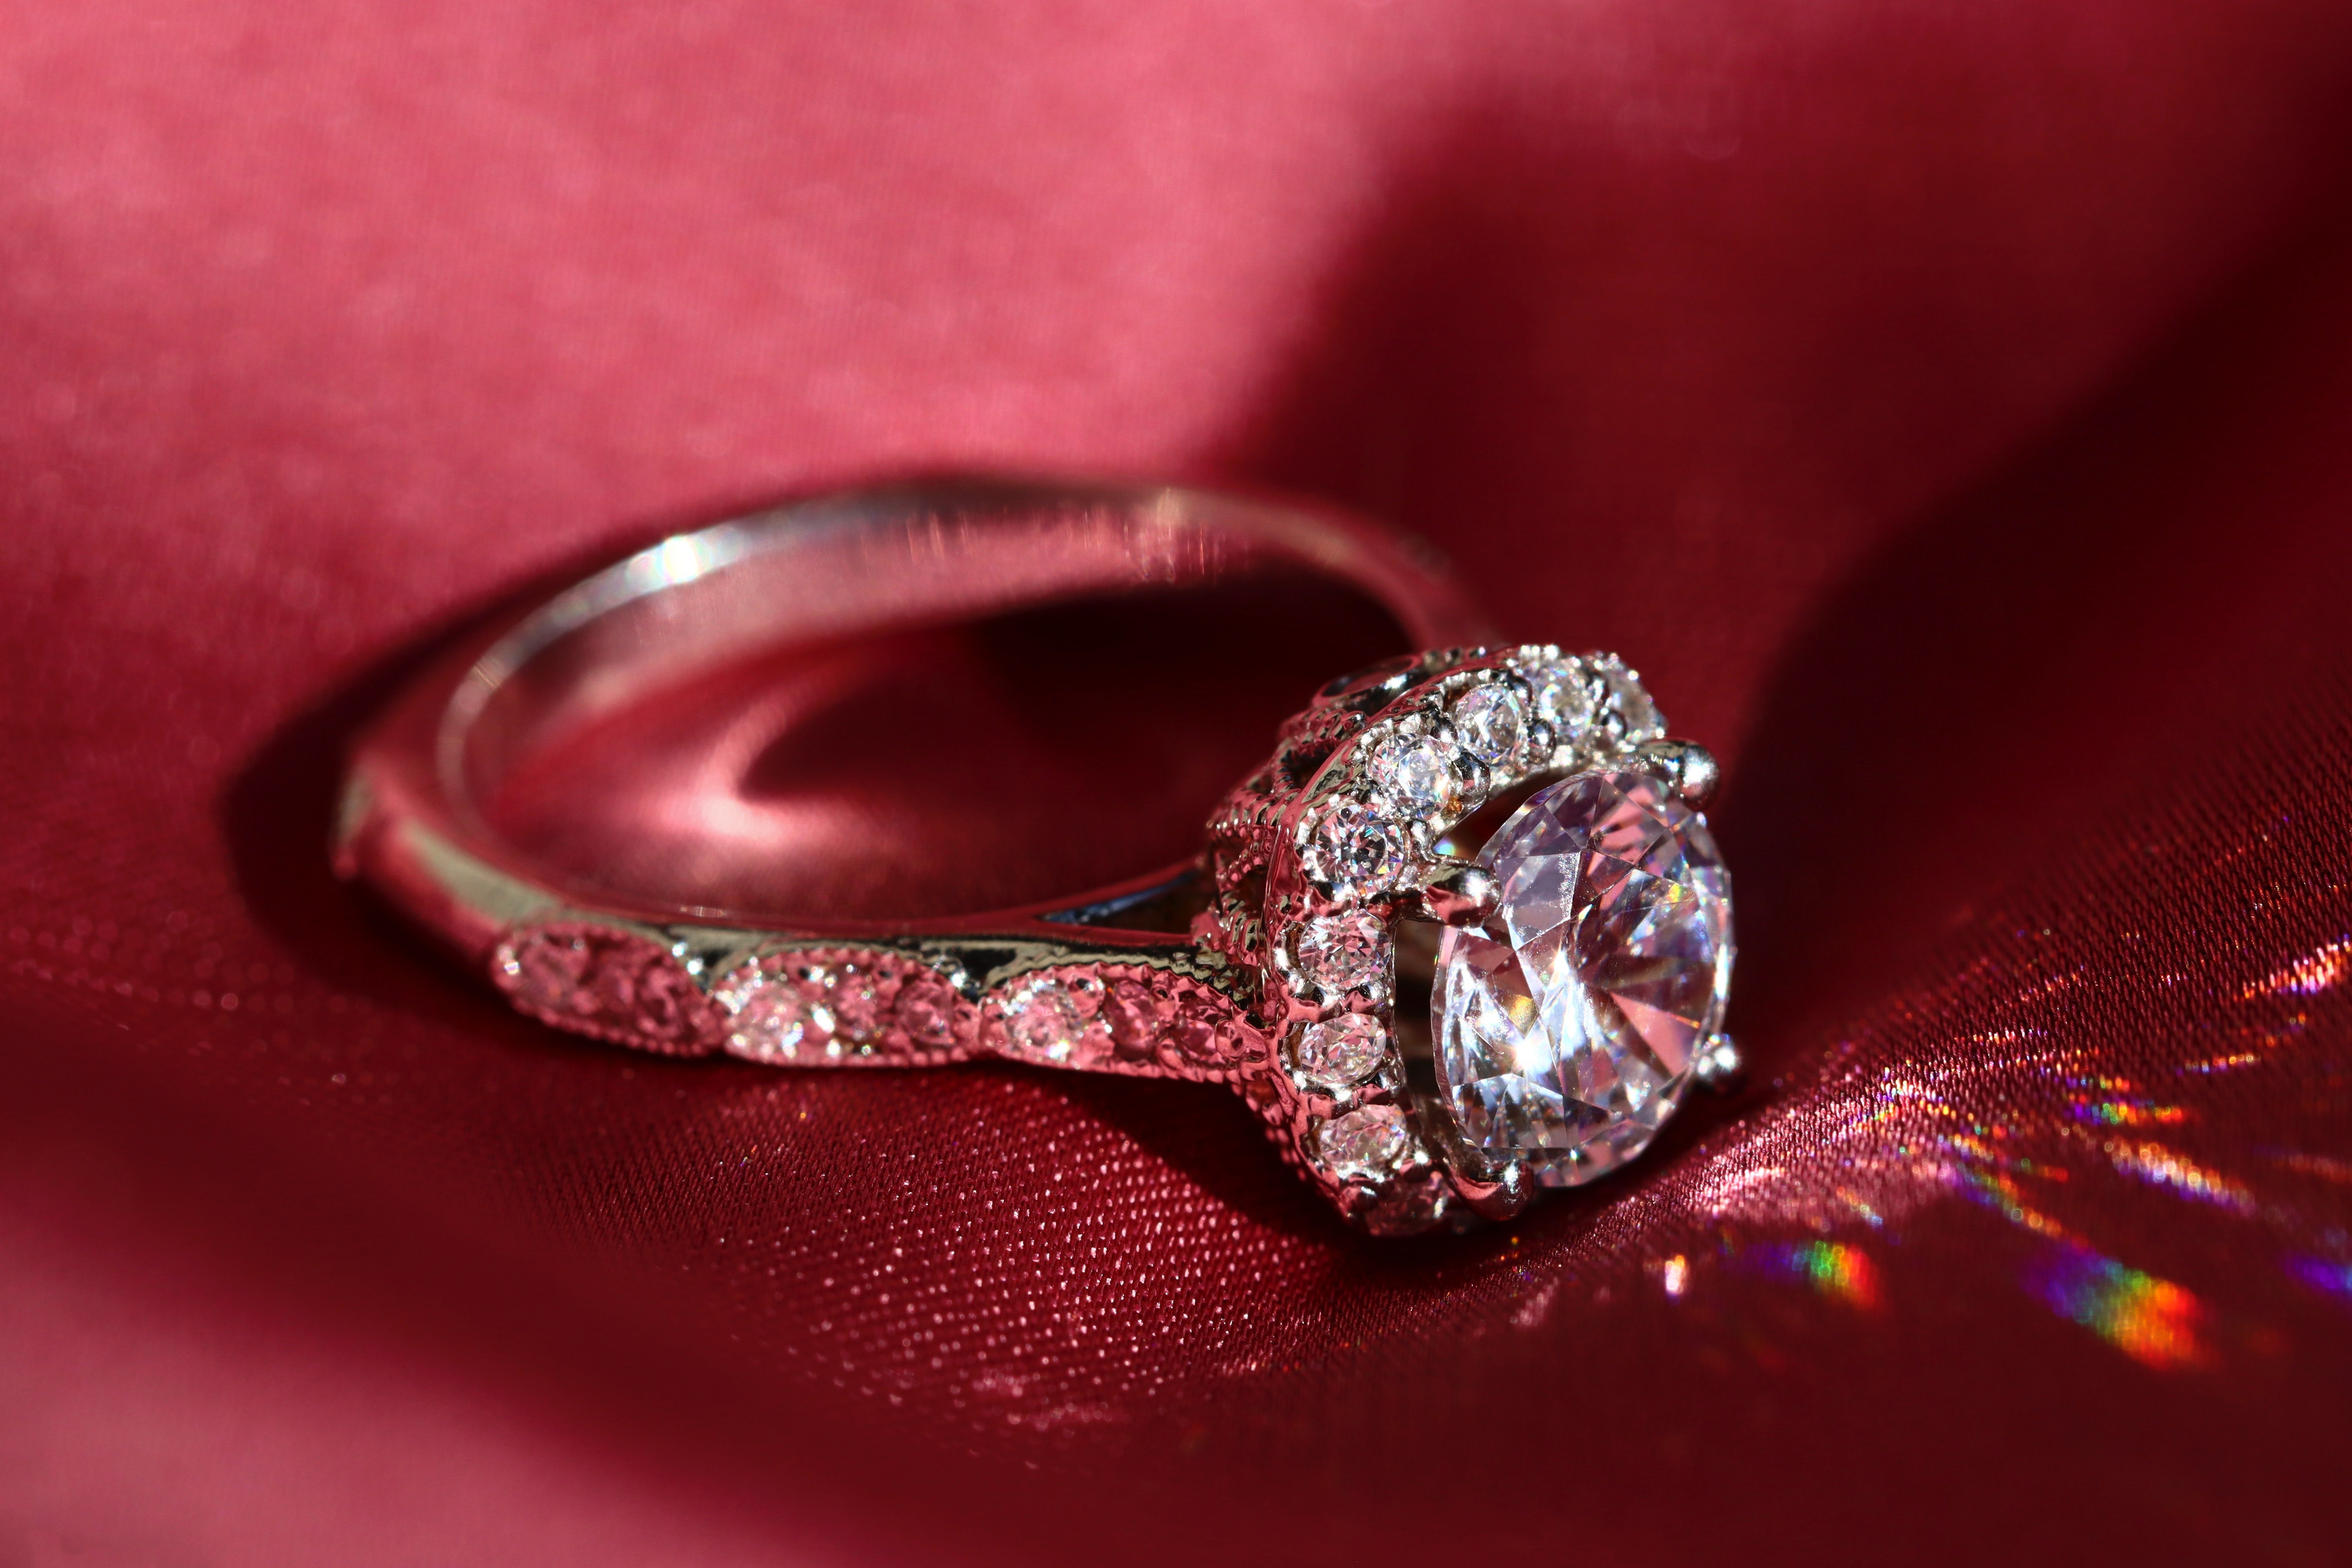 Ben machte mit einem umwerfenden Ring einen Heiratsantrag. | Quelle: Unsplash